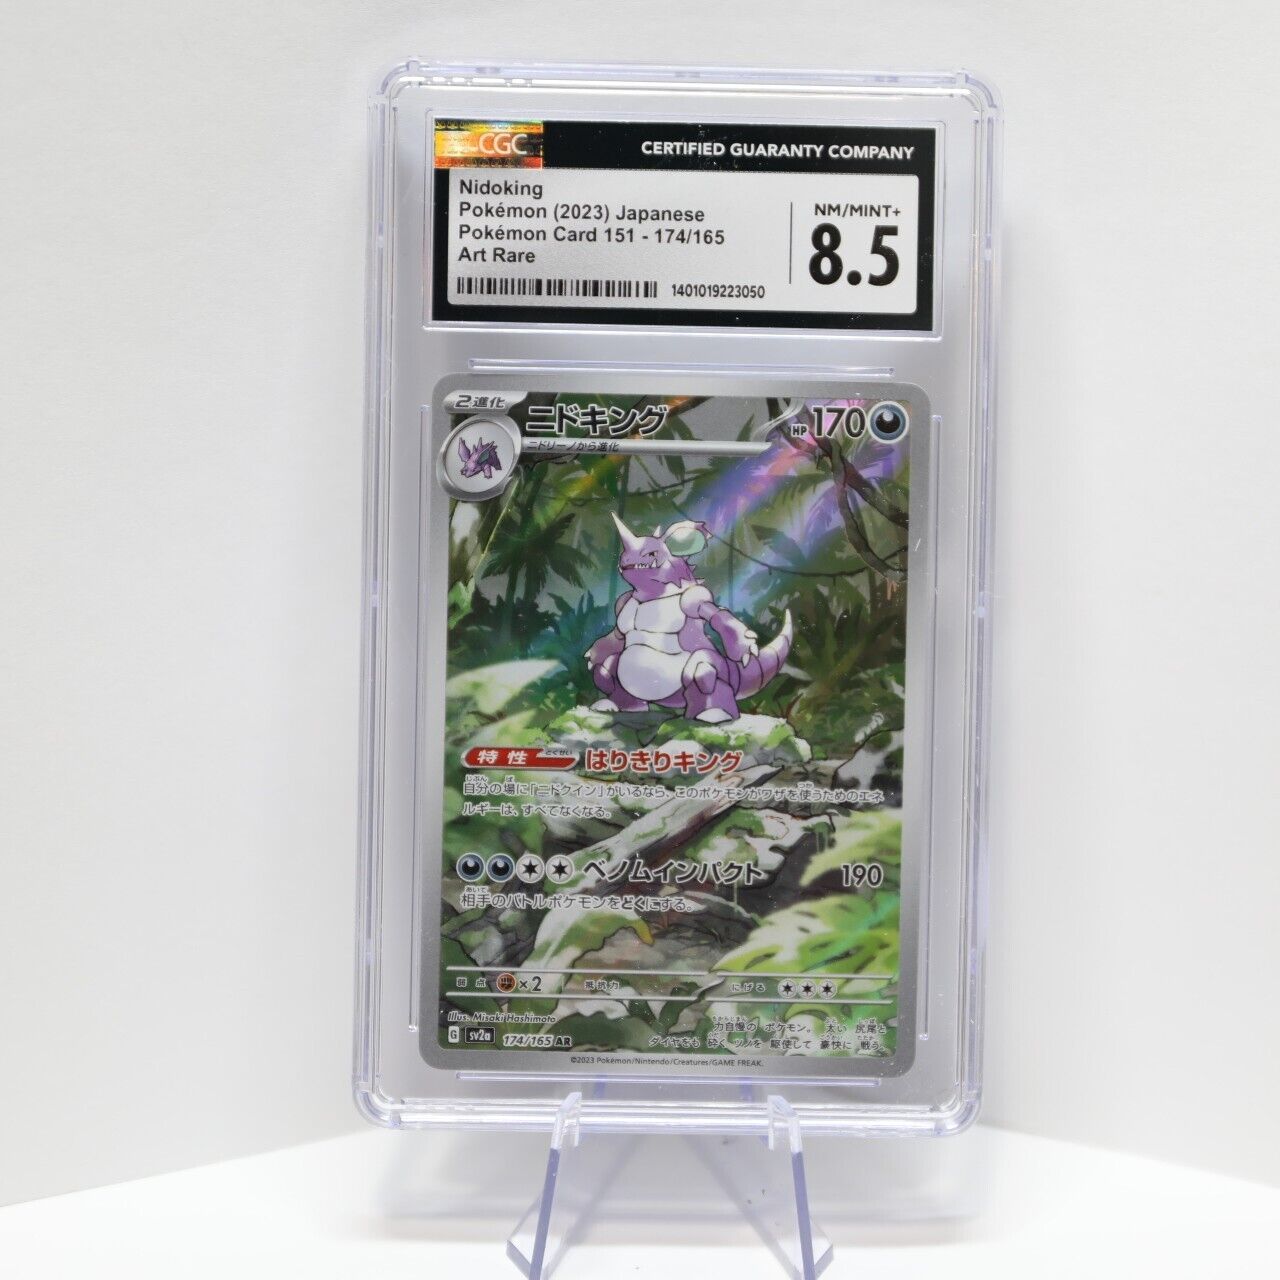 CGC 8.5 Pokémon 2023 Nidoking 174/165 Pokémon Card 151 - sv2a Art Rare Japanese